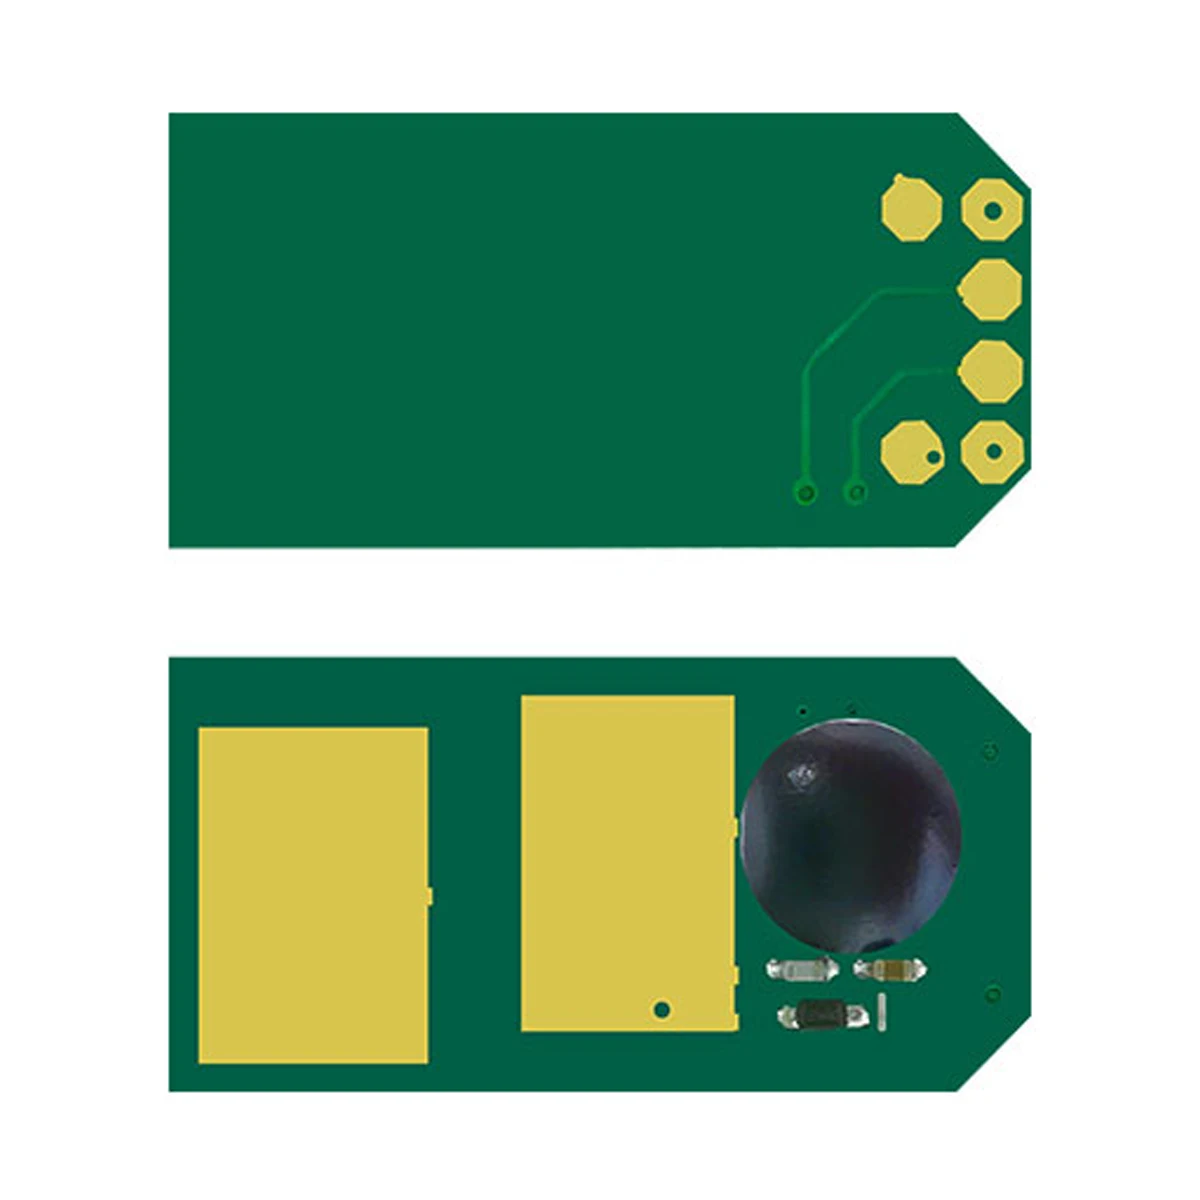 

Toner Chip Reset for OKI DATA OKIDATA MC-551 C-300 C 310 C 312 C 330 C 510 C 511 C 530 C 531 MC 351 MC 352 n dn dnw w mfp ndw